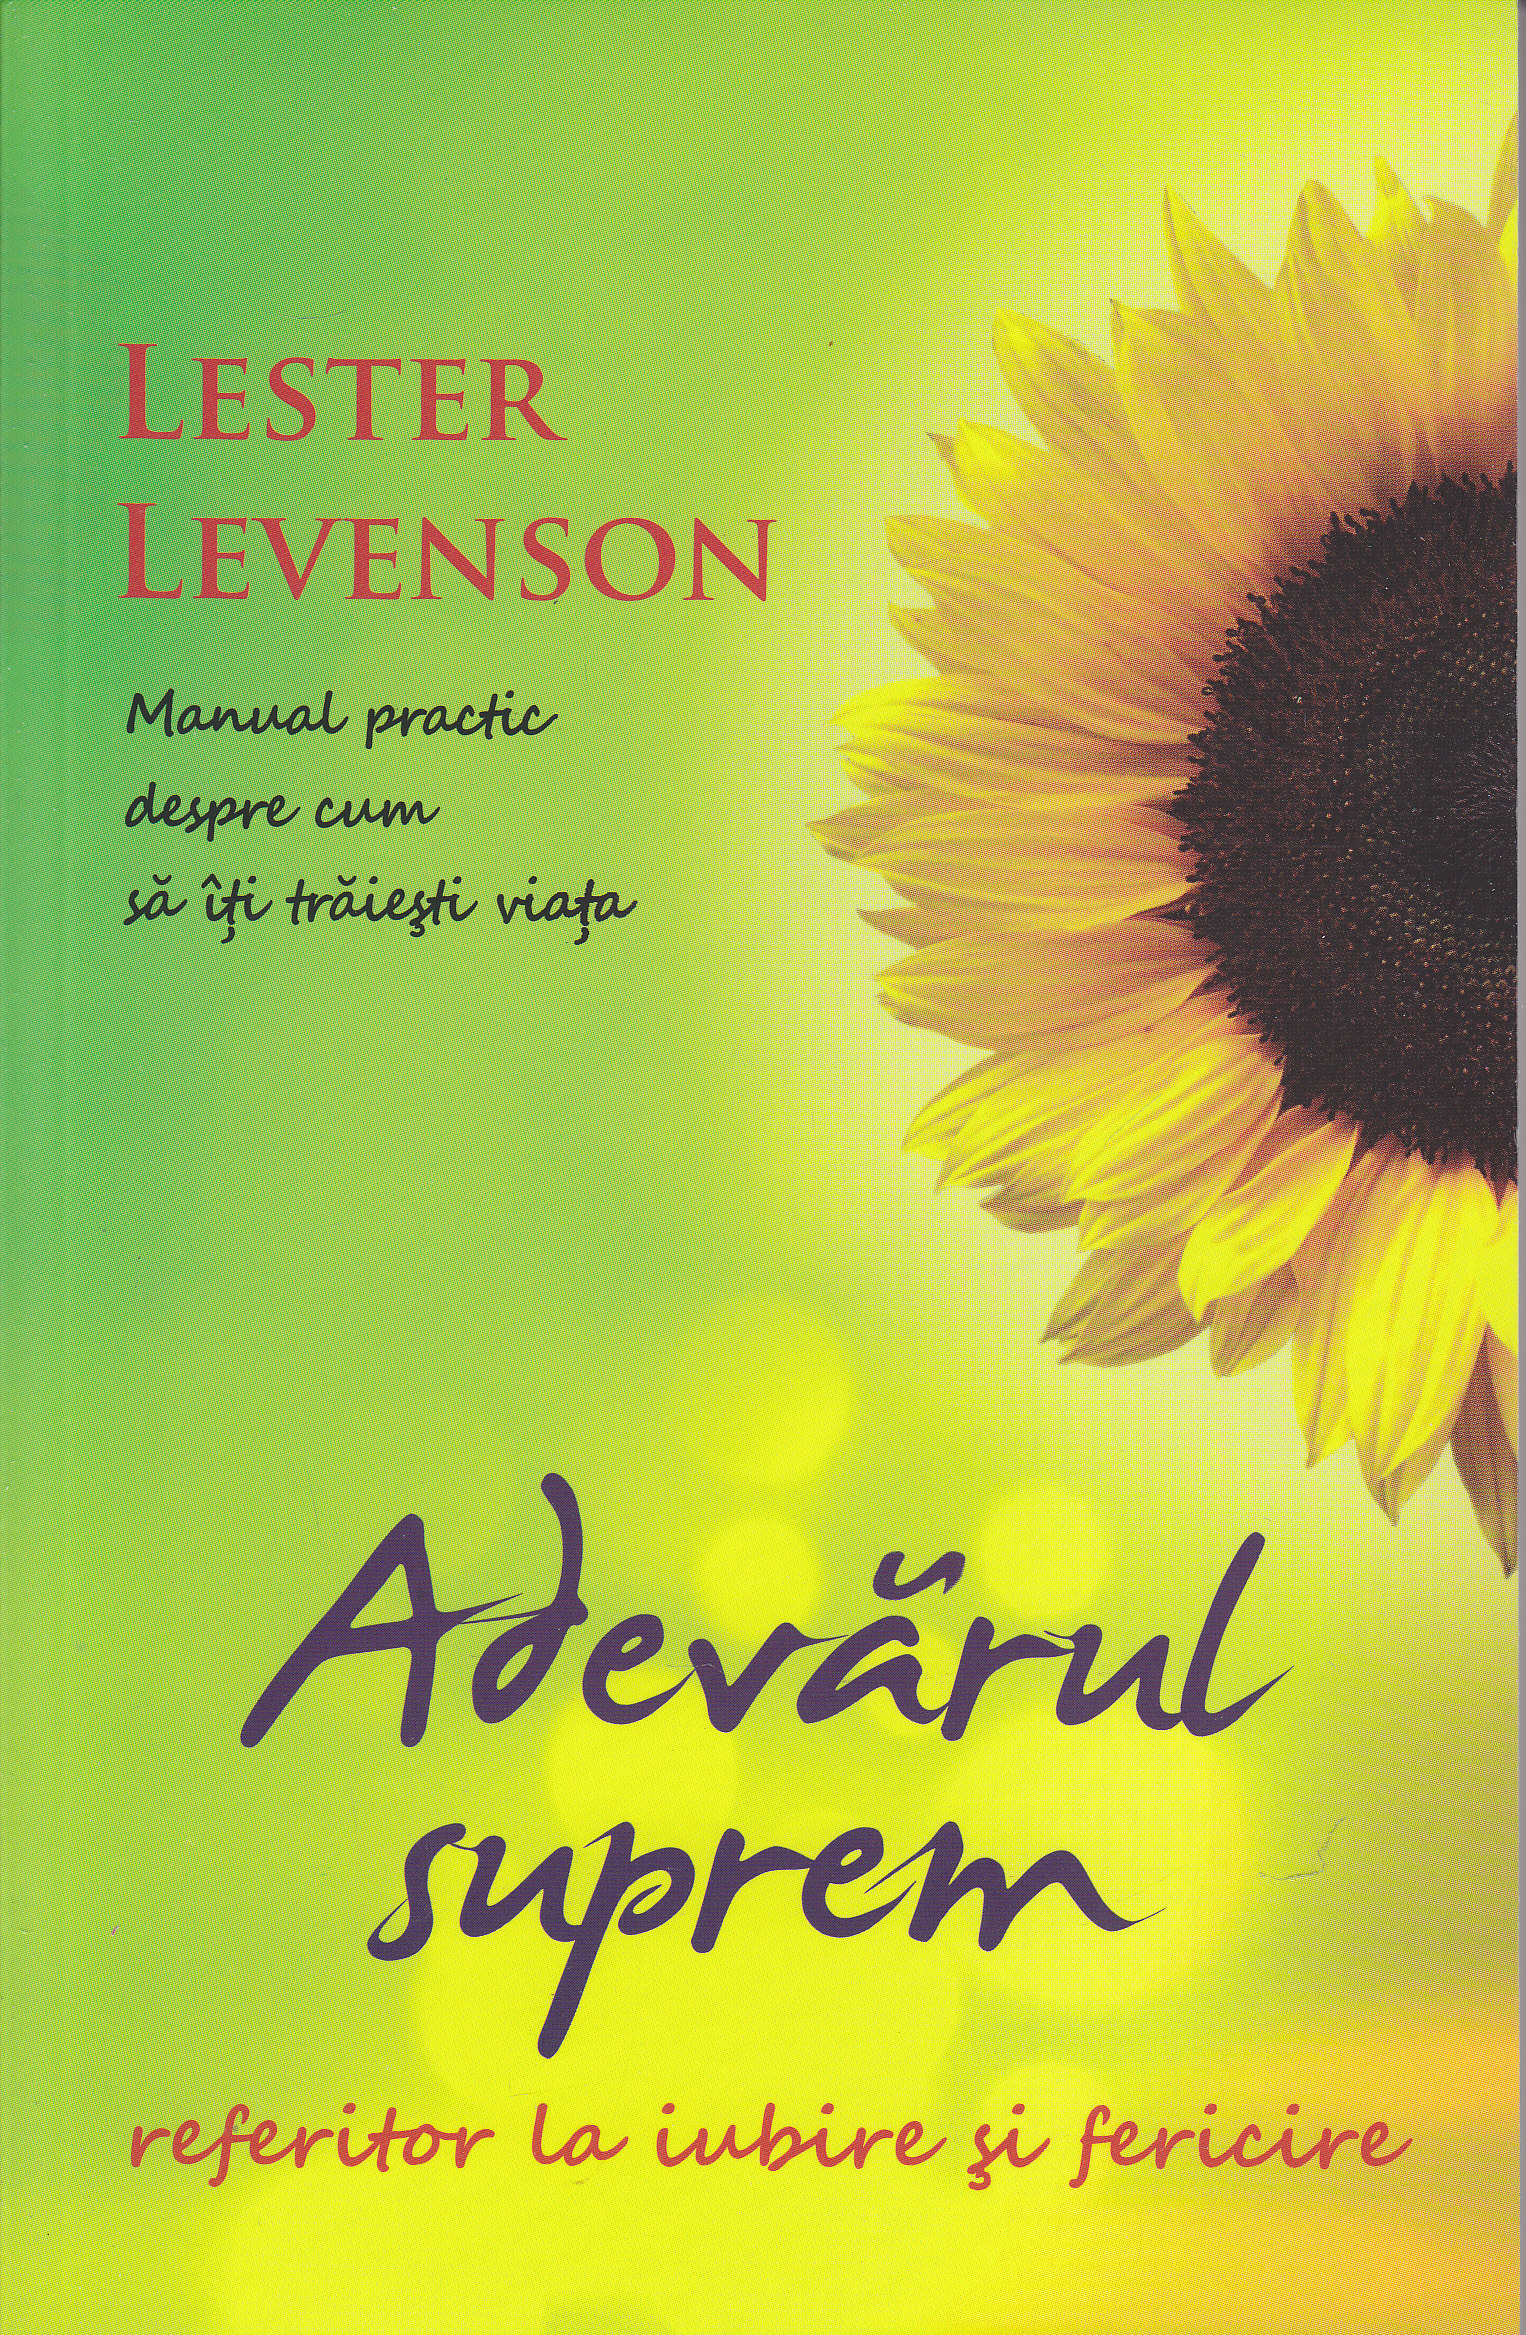 Adevarul suprem referitor la iubire si fericire - Lester Levenson